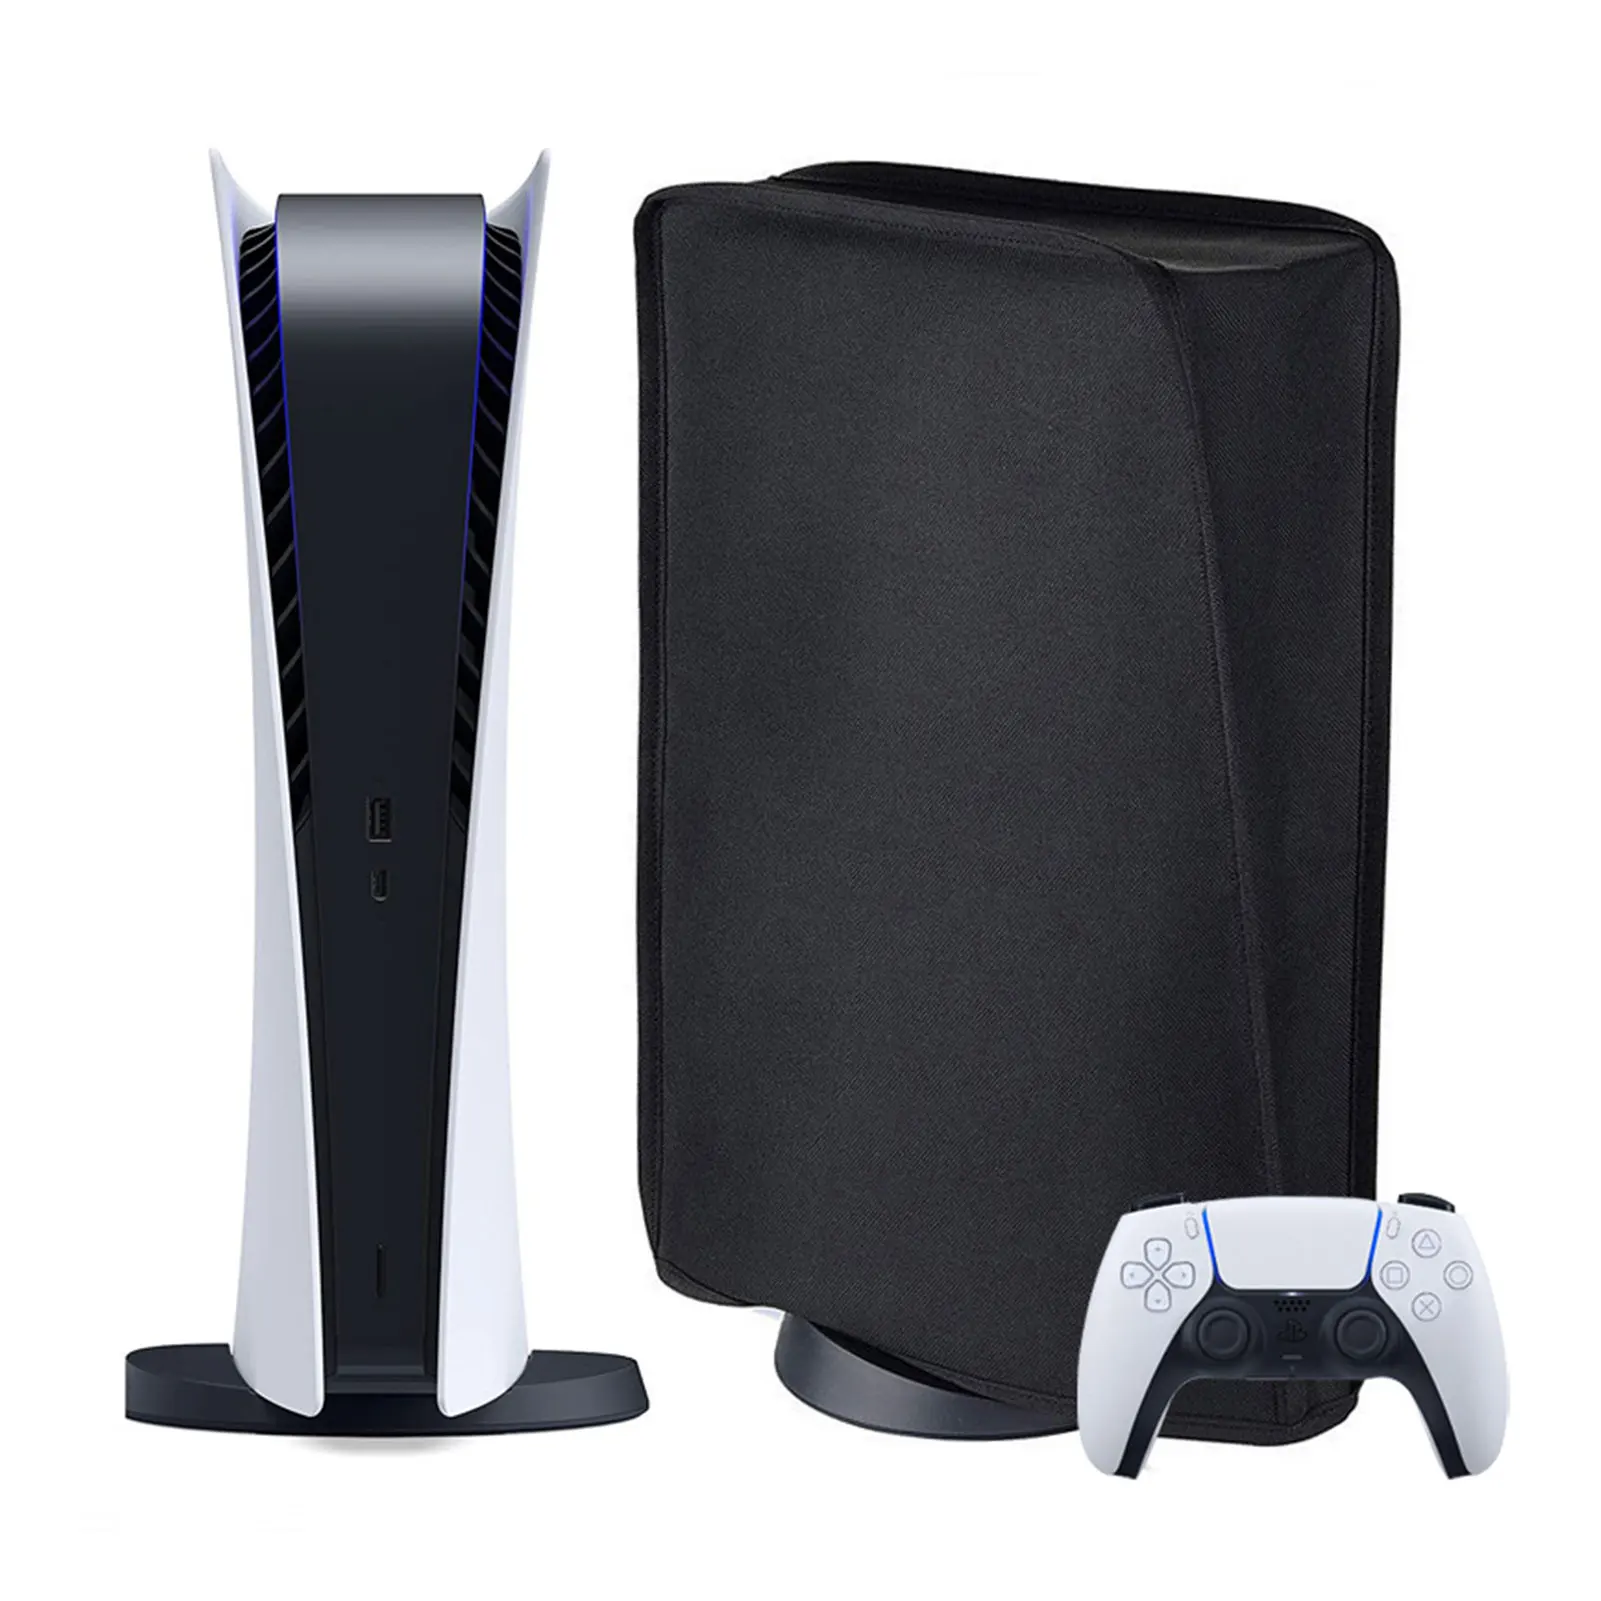 

Чехол для игровой консоли PS5, пылезащитный чехол, водонепроницаемый защитный чехол с защитой от царапин для игровых аксессуаров PS5